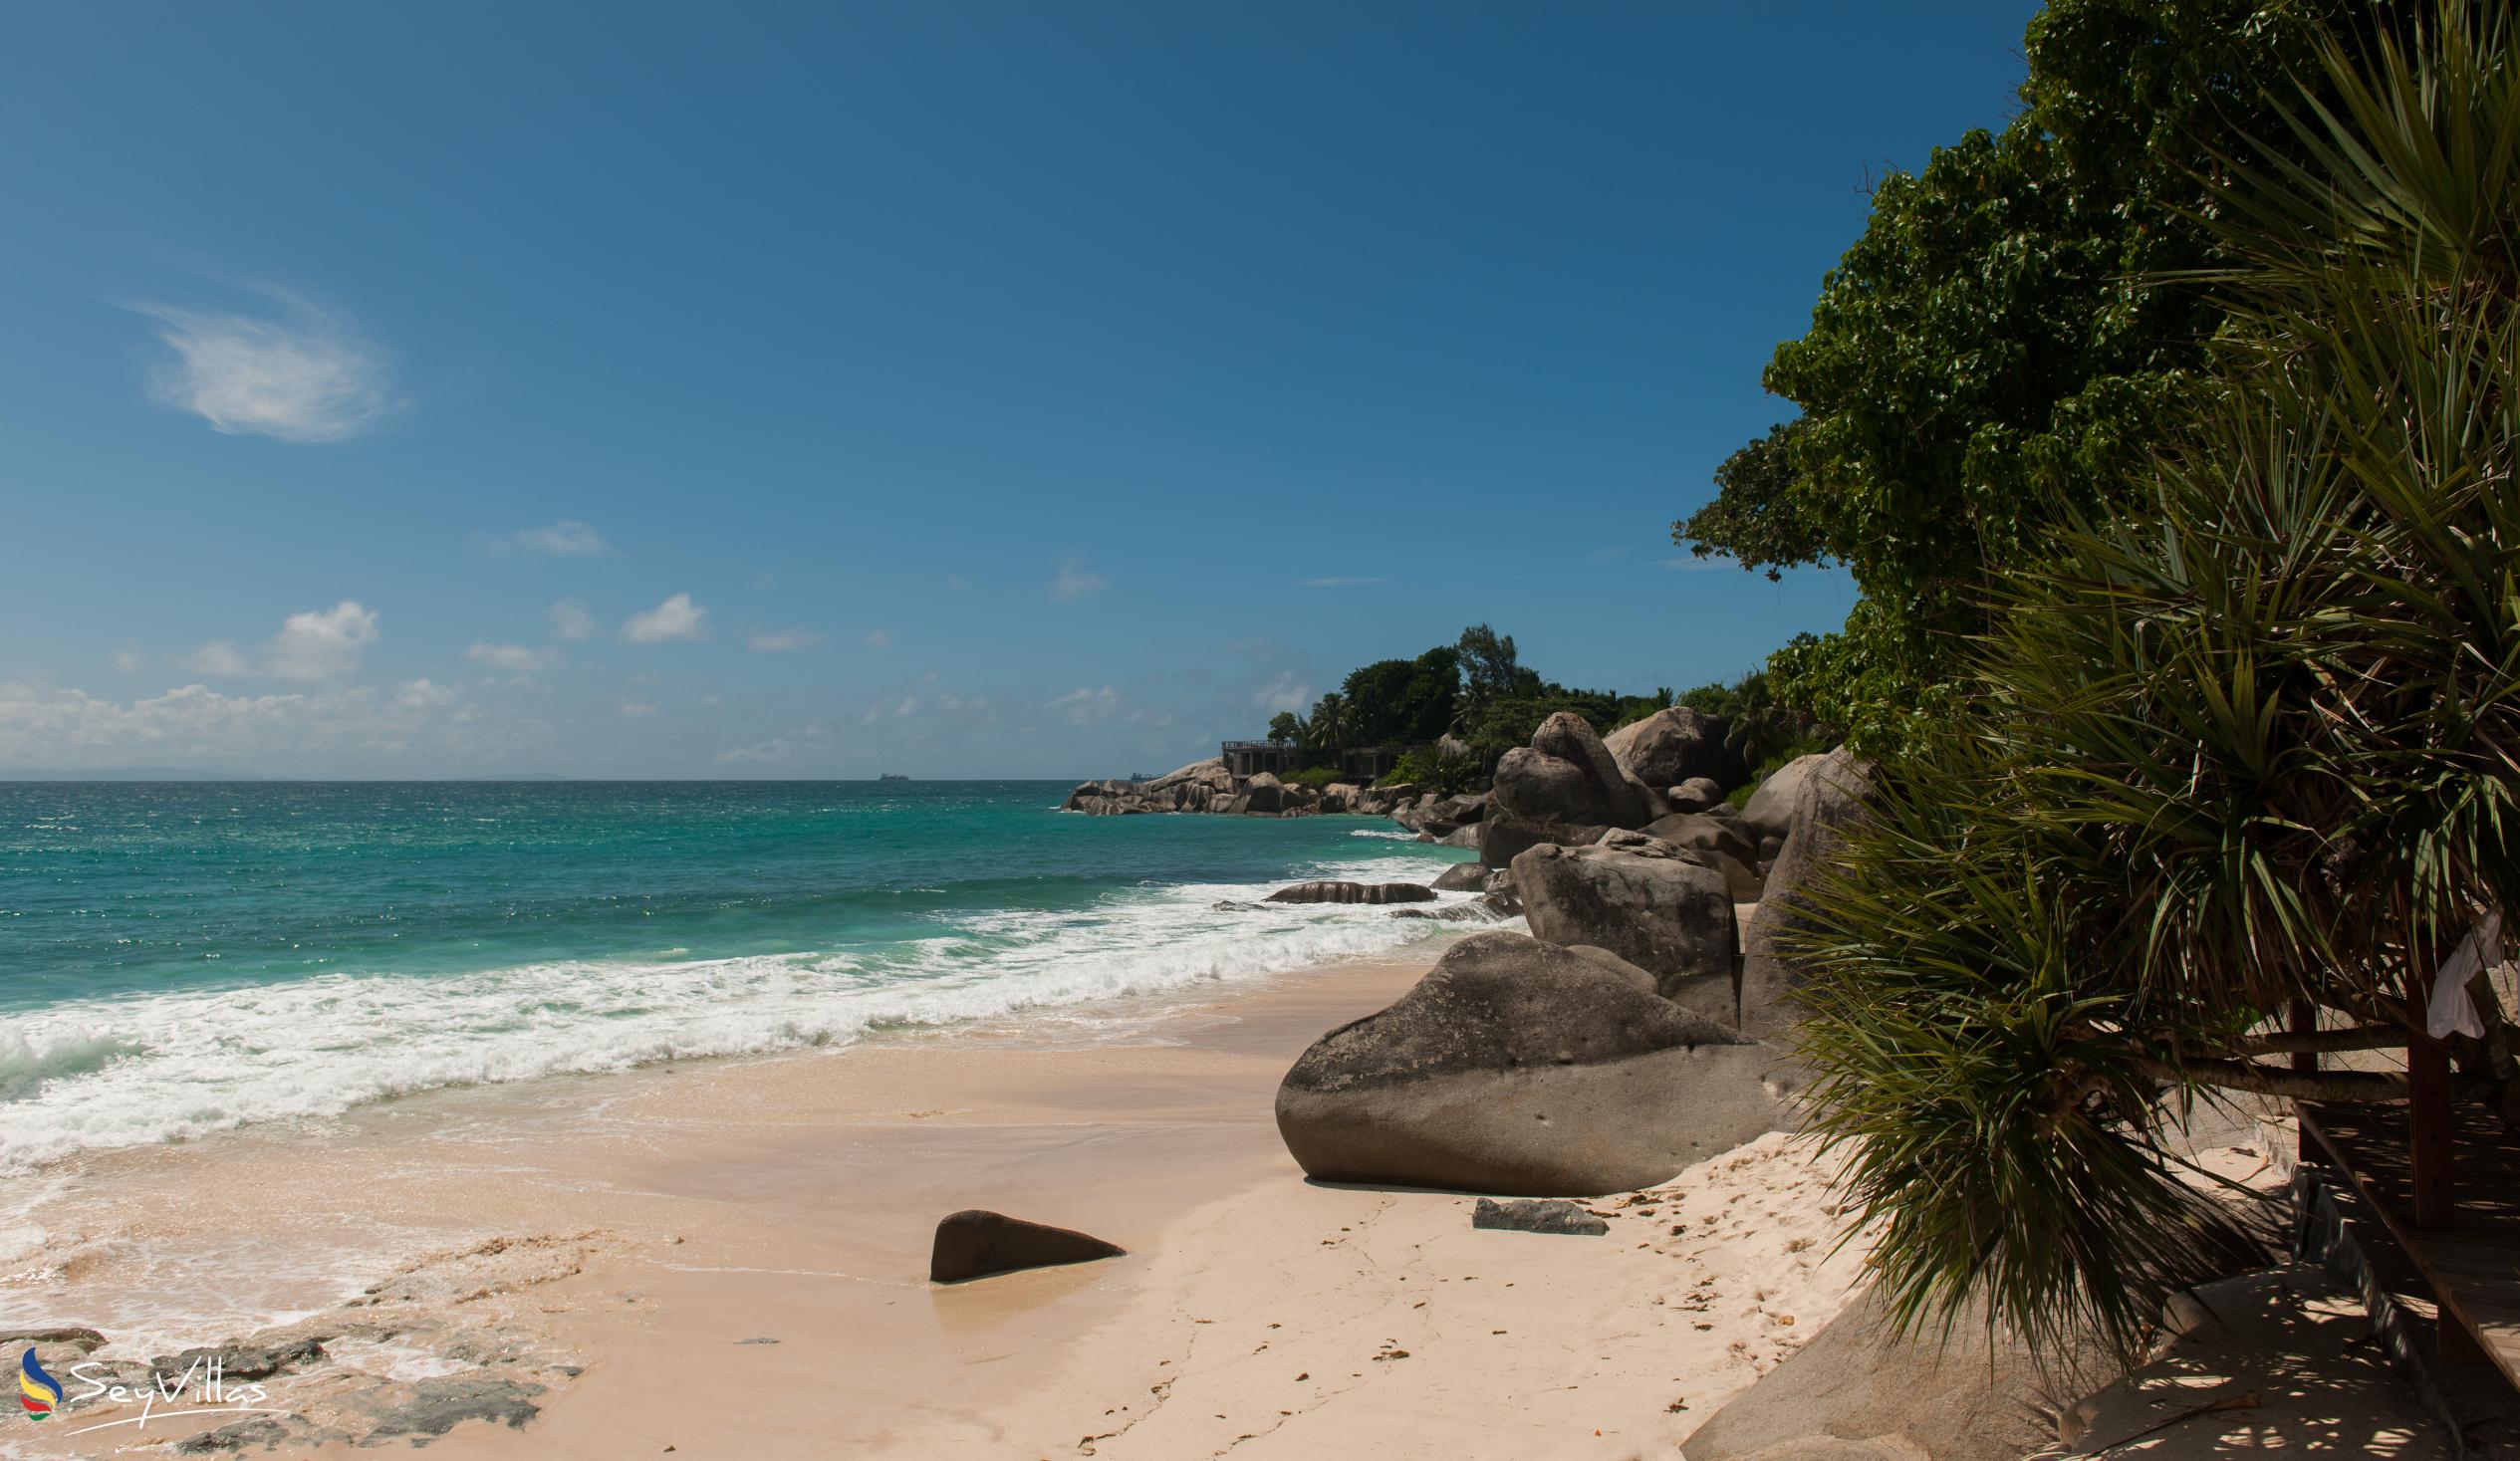 Foto 73: Carana Beach Hotel - Location - Mahé (Seychelles)